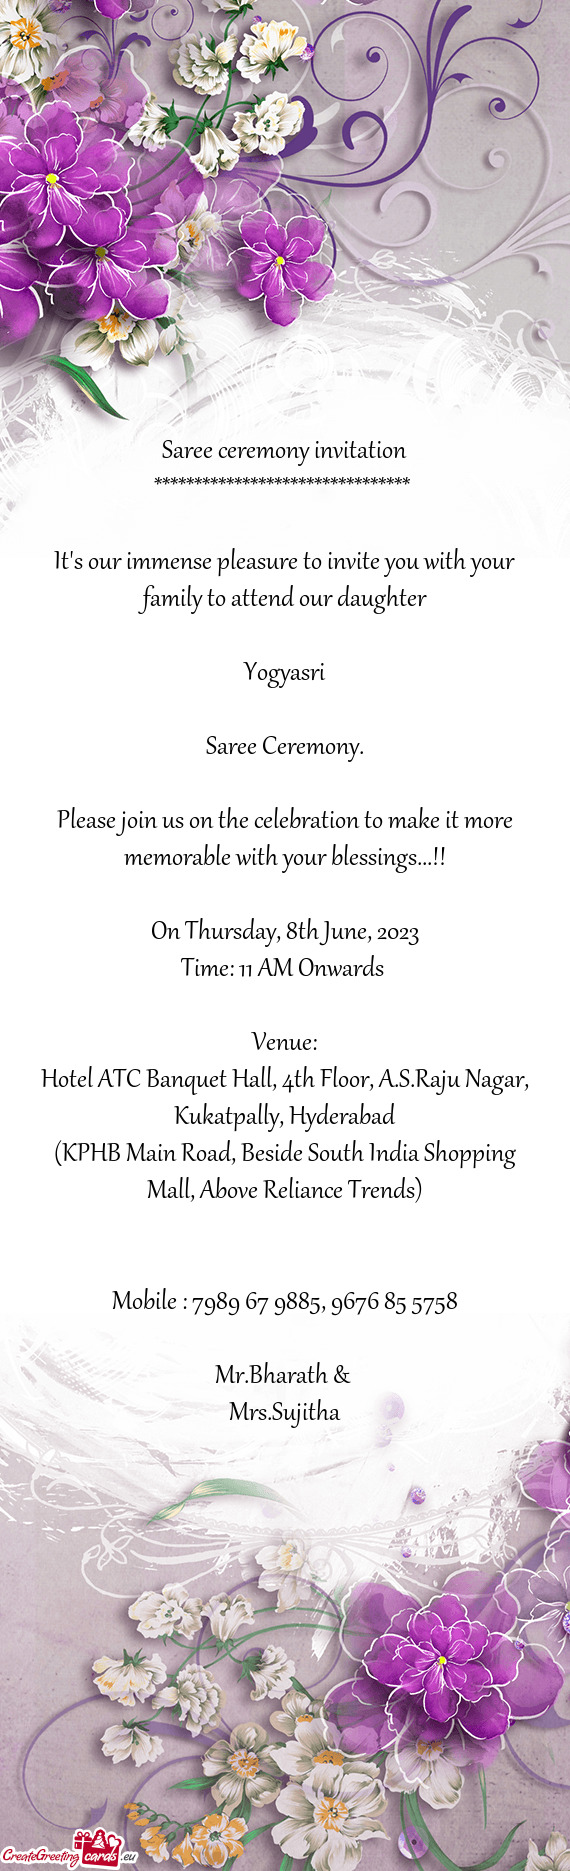 Hotel ATC Banquet Hall, 4th Floor, A.S.Raju Nagar, Kukatpally, Hyderabad